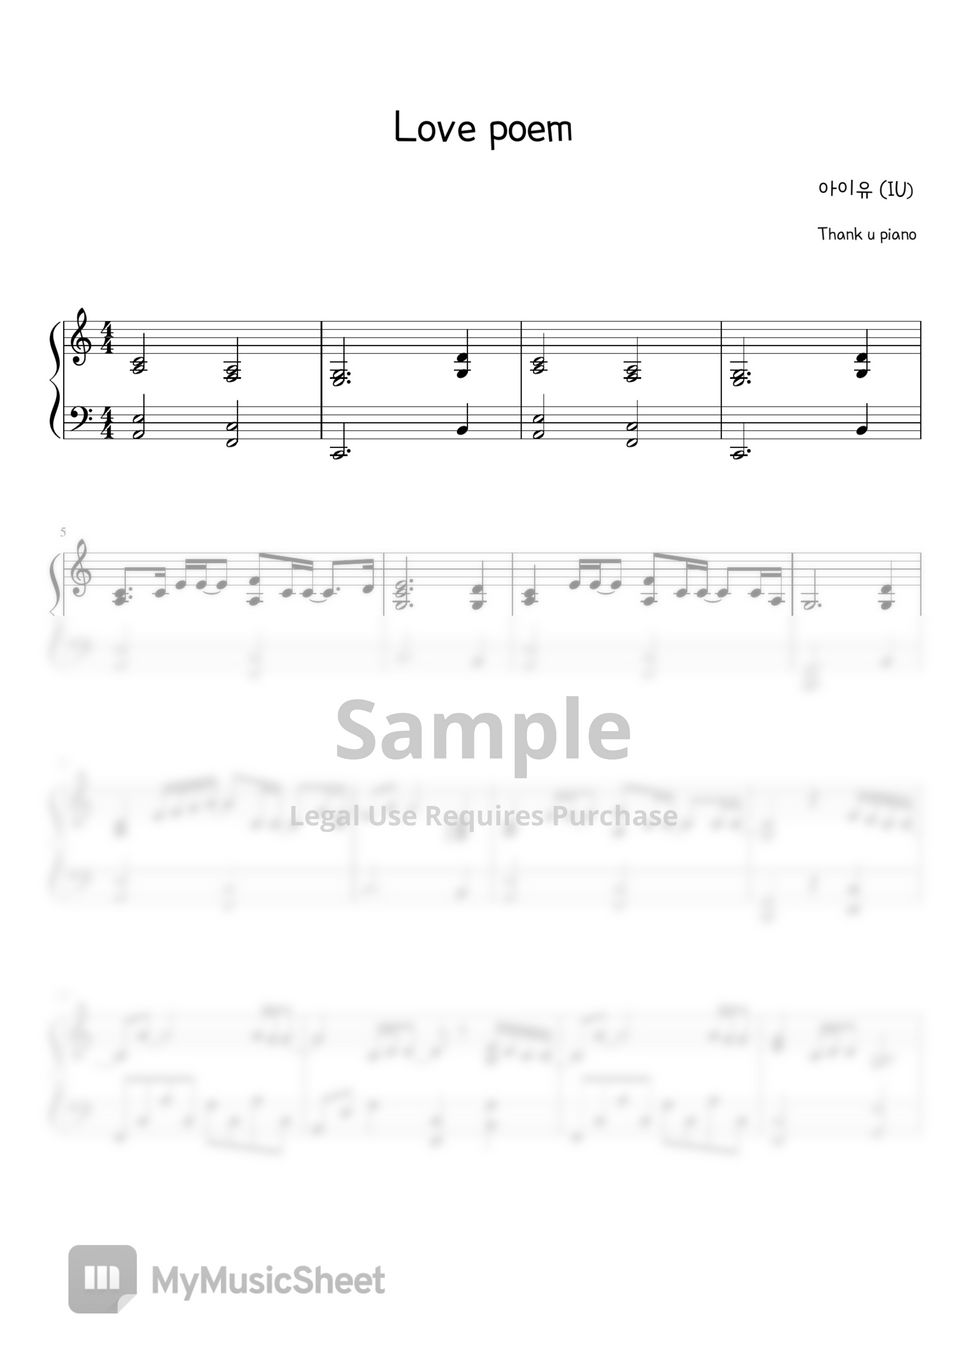 IU - Love Poem (Piano Sheet) by ThankuPiano